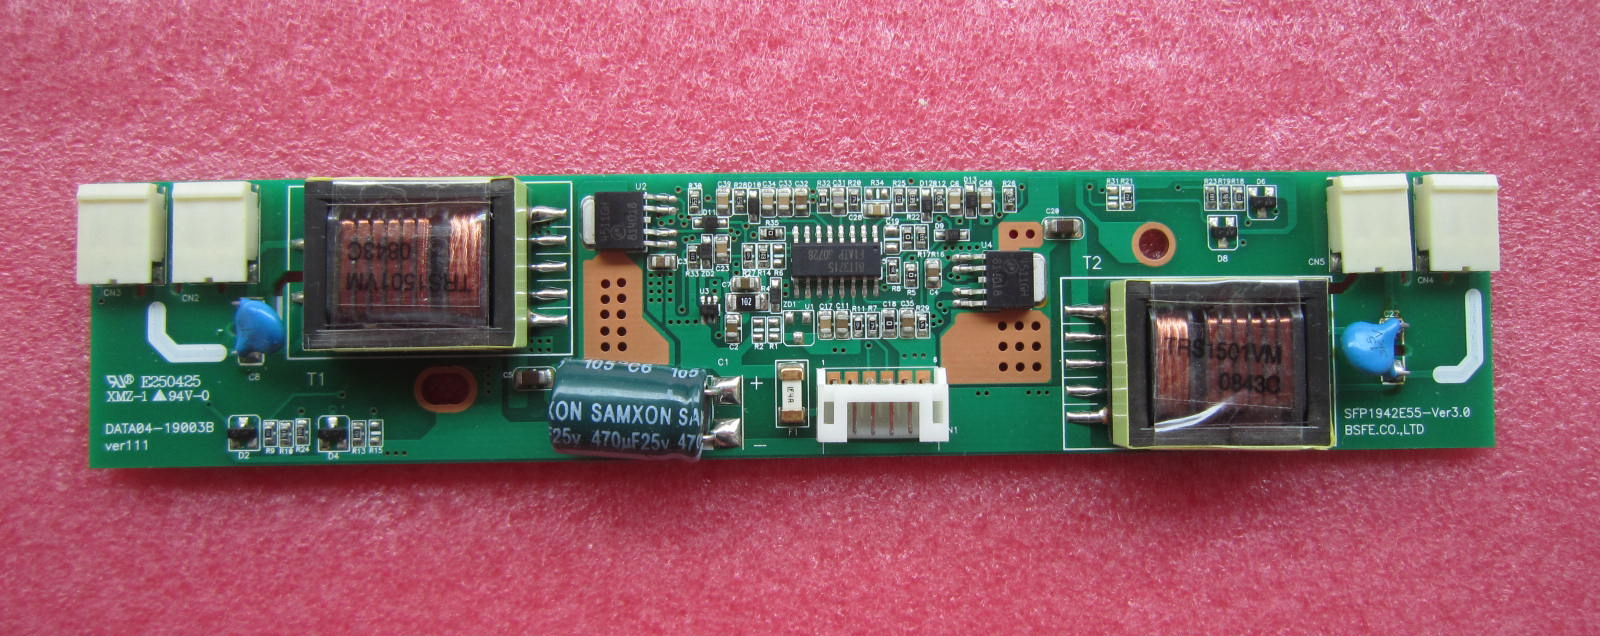 DATA04-19003B SFP1942E55 lcd inverter board